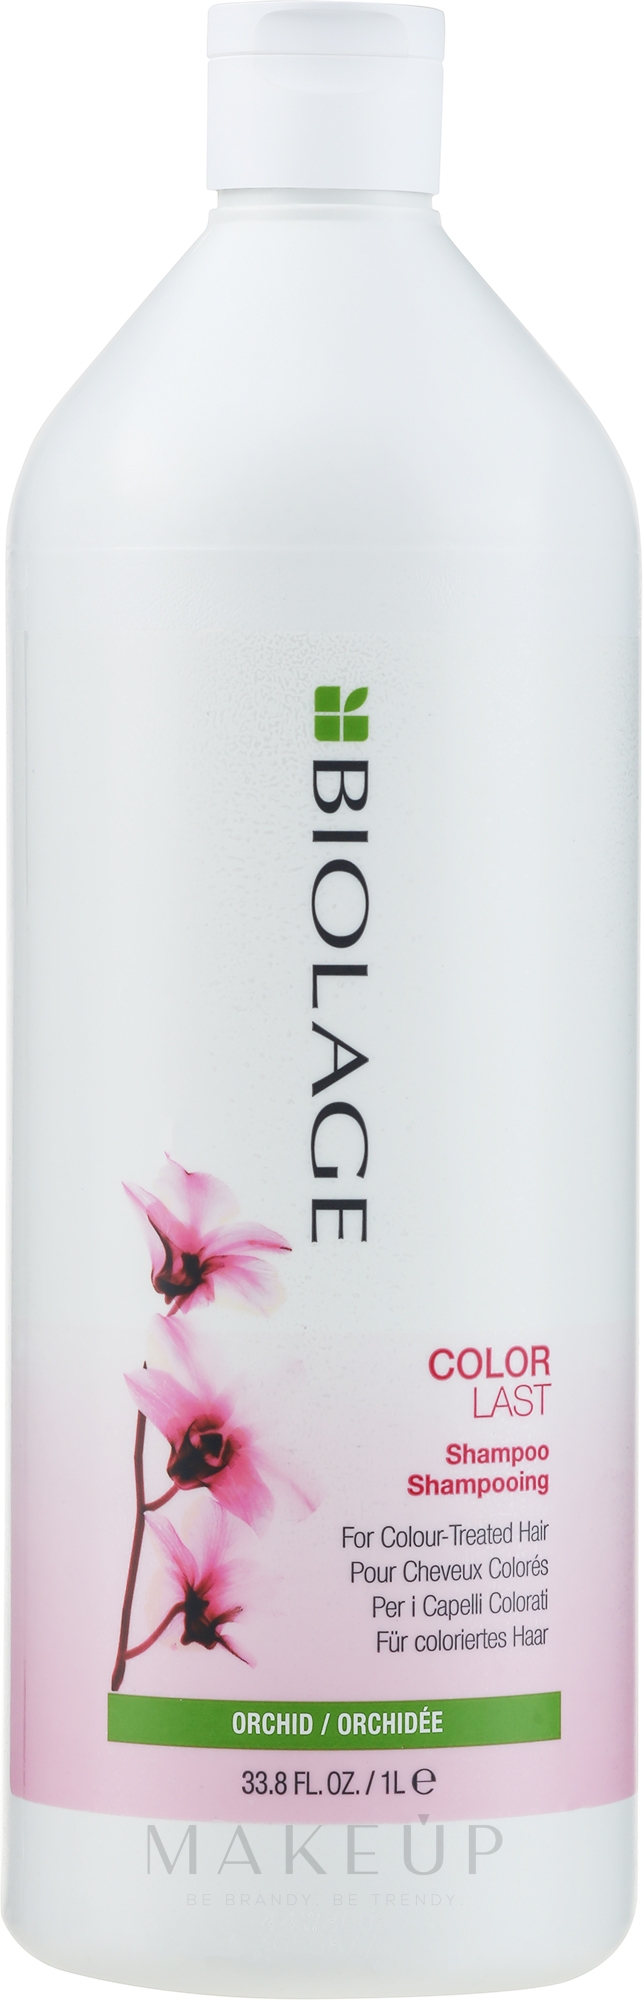 Schützendes Shampoo für coloriertes Haar - Biolage Colorlast Shampoo — Bild 1000 ml